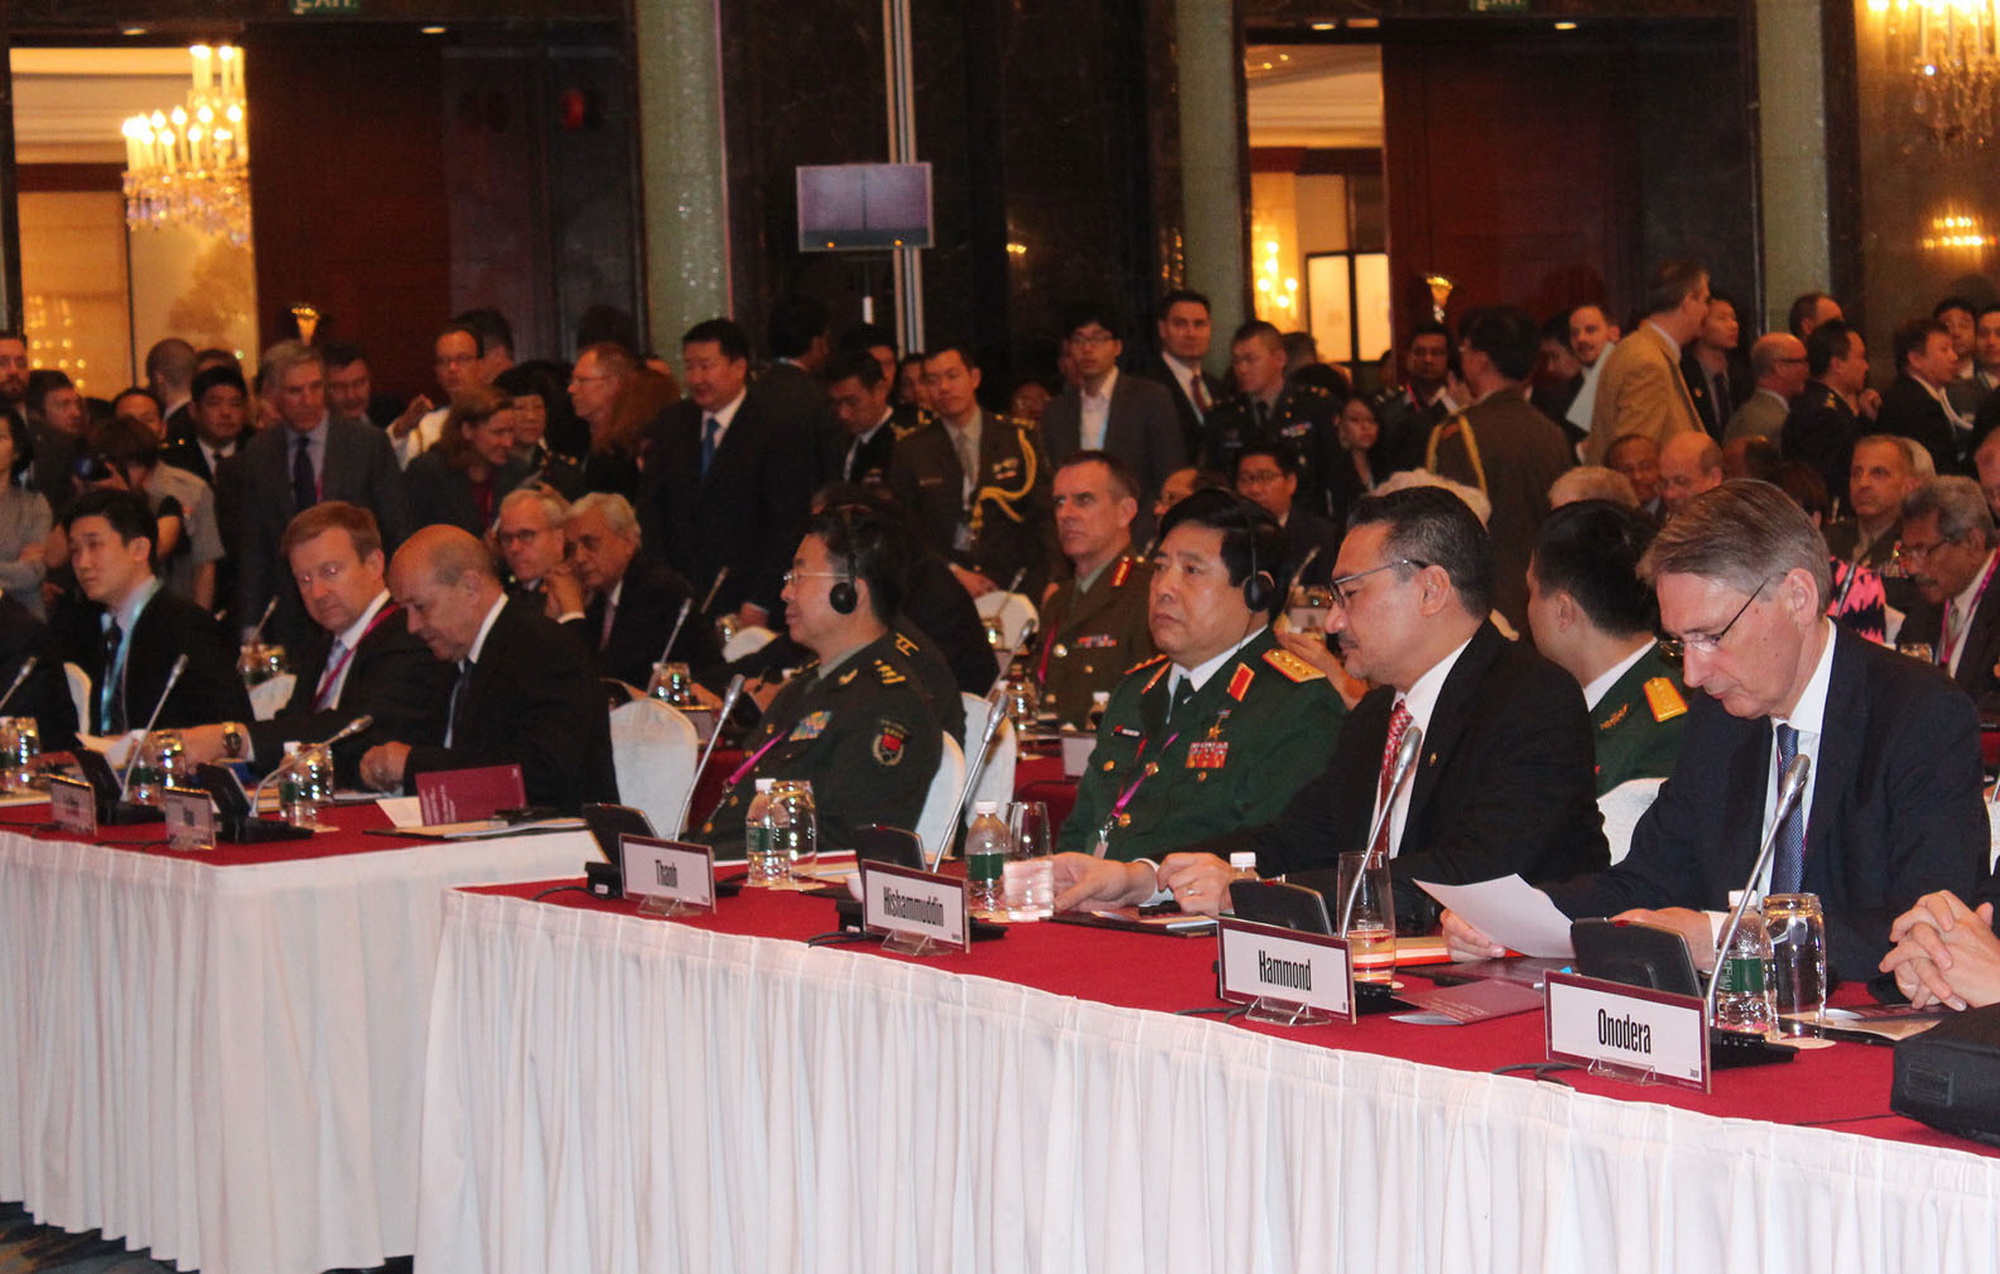 Đại tướng Phùng Quang Thanh, Bộ trưởng Bộ Quốc phòng Việt Nam tại Hội nghị Thượng đỉnh An ninh châu Á lần thứ 13 (Đối thoại Shangri-La) tổ chức tại Singapore vào ngày 31/5/2014. (Ảnh: Lê Hải/TTXVN)